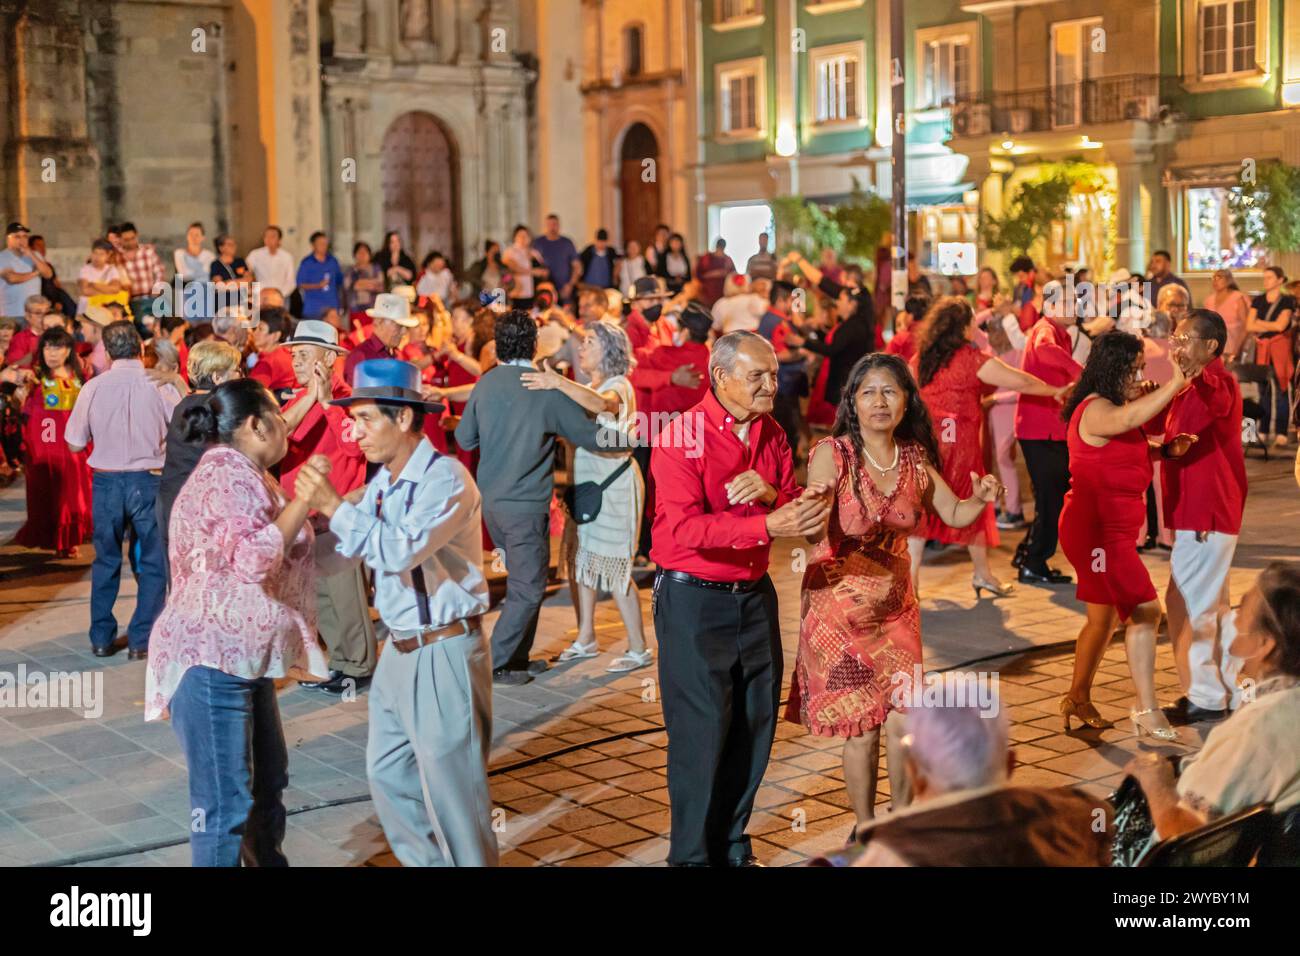 Oaxaca, Mexique - la danse hebdomadaire du mercredi dans le zocalo, ou place centrale. Cette nuit, la danse était le jour de la Saint-Valentin, avec de nombreux danseurs portant R Banque D'Images